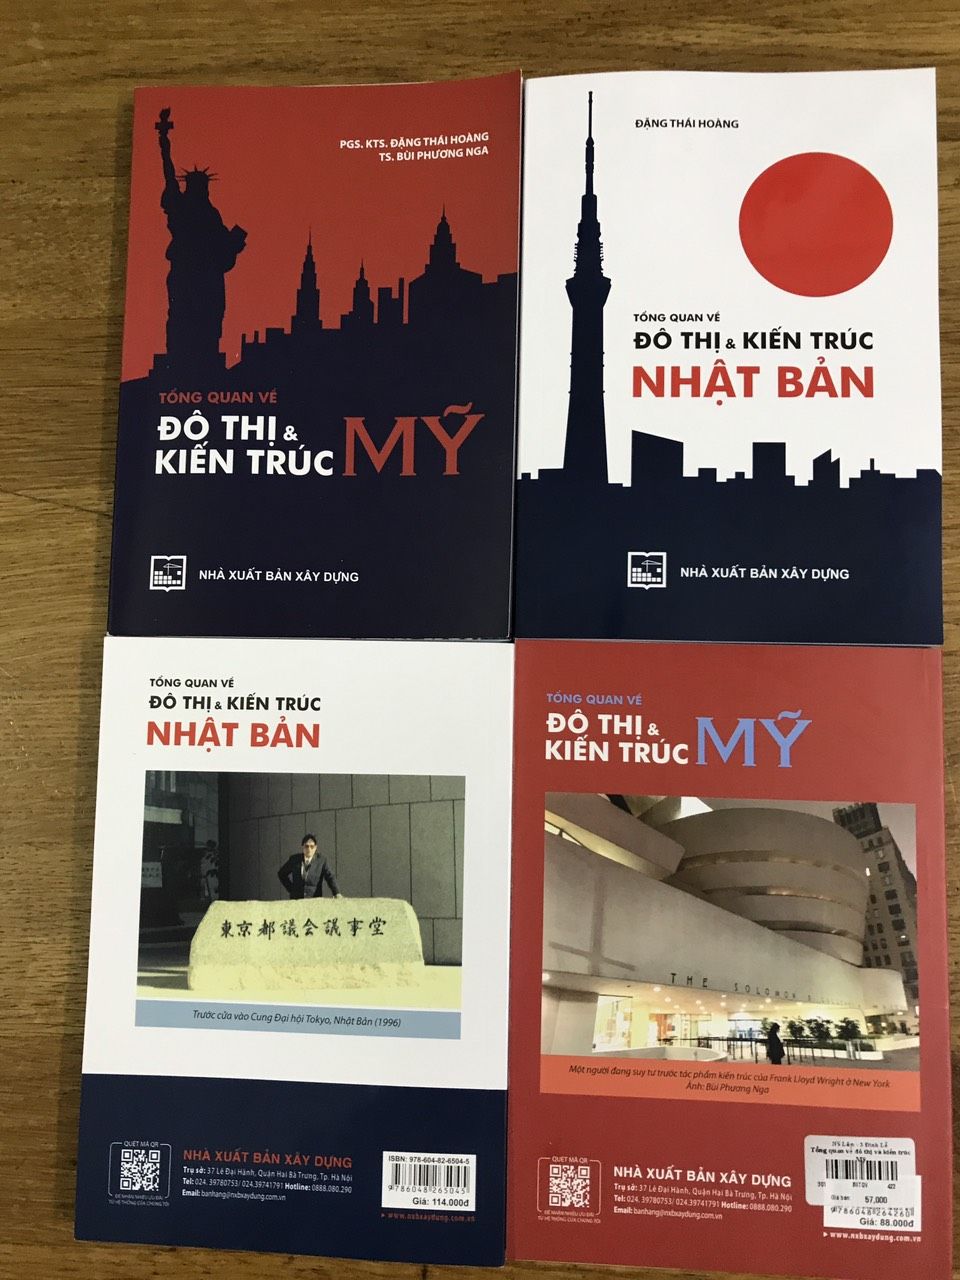 PGS. KTS. Đặng Thái Hoàng ra mắt 2 cuốn sách mới về đô thị và kiến trúc 